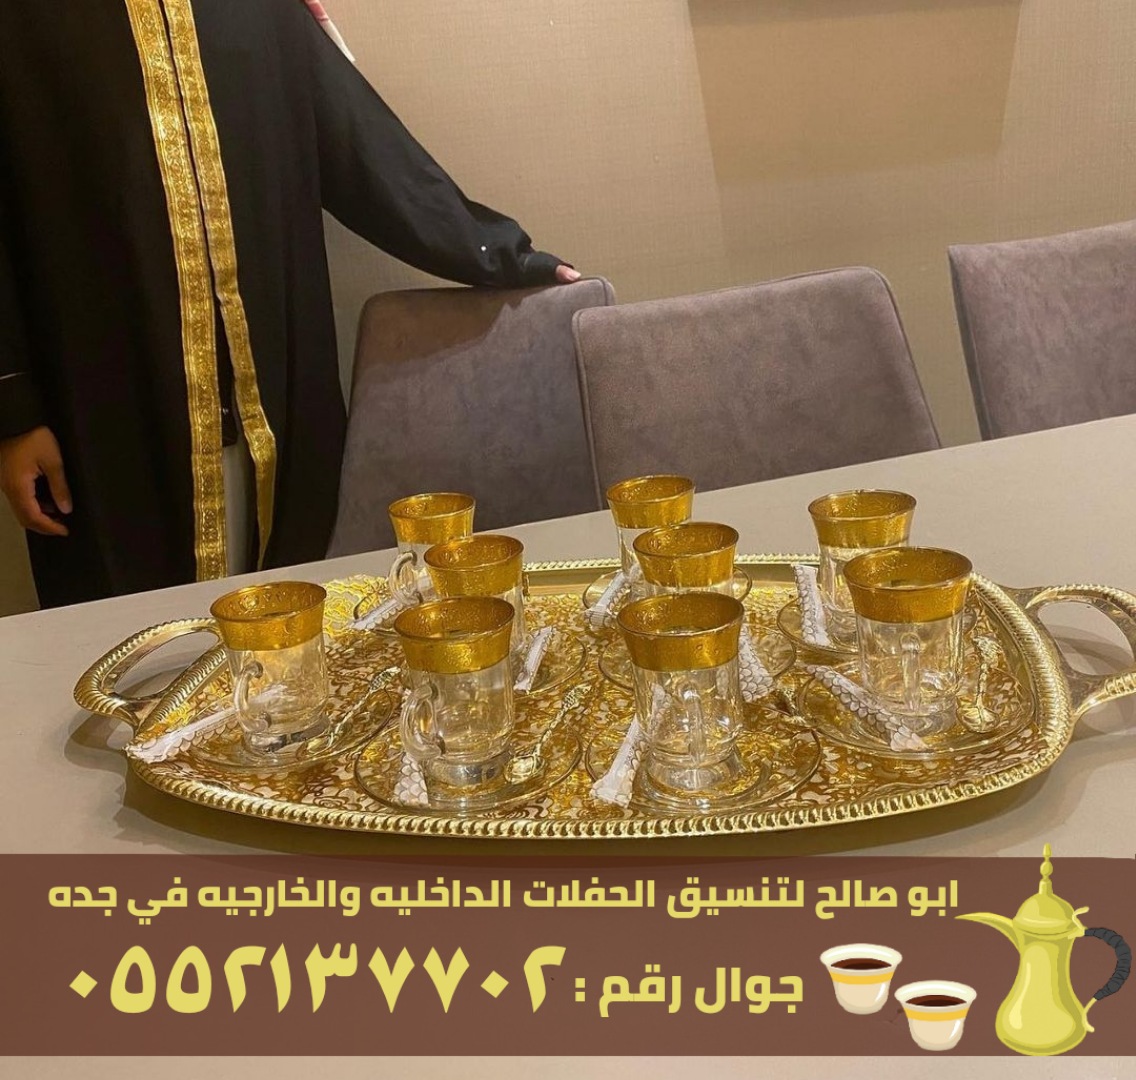 فريق صبابين قهوة للضيافة في جدة, 0552137702 P_26364o2mf7